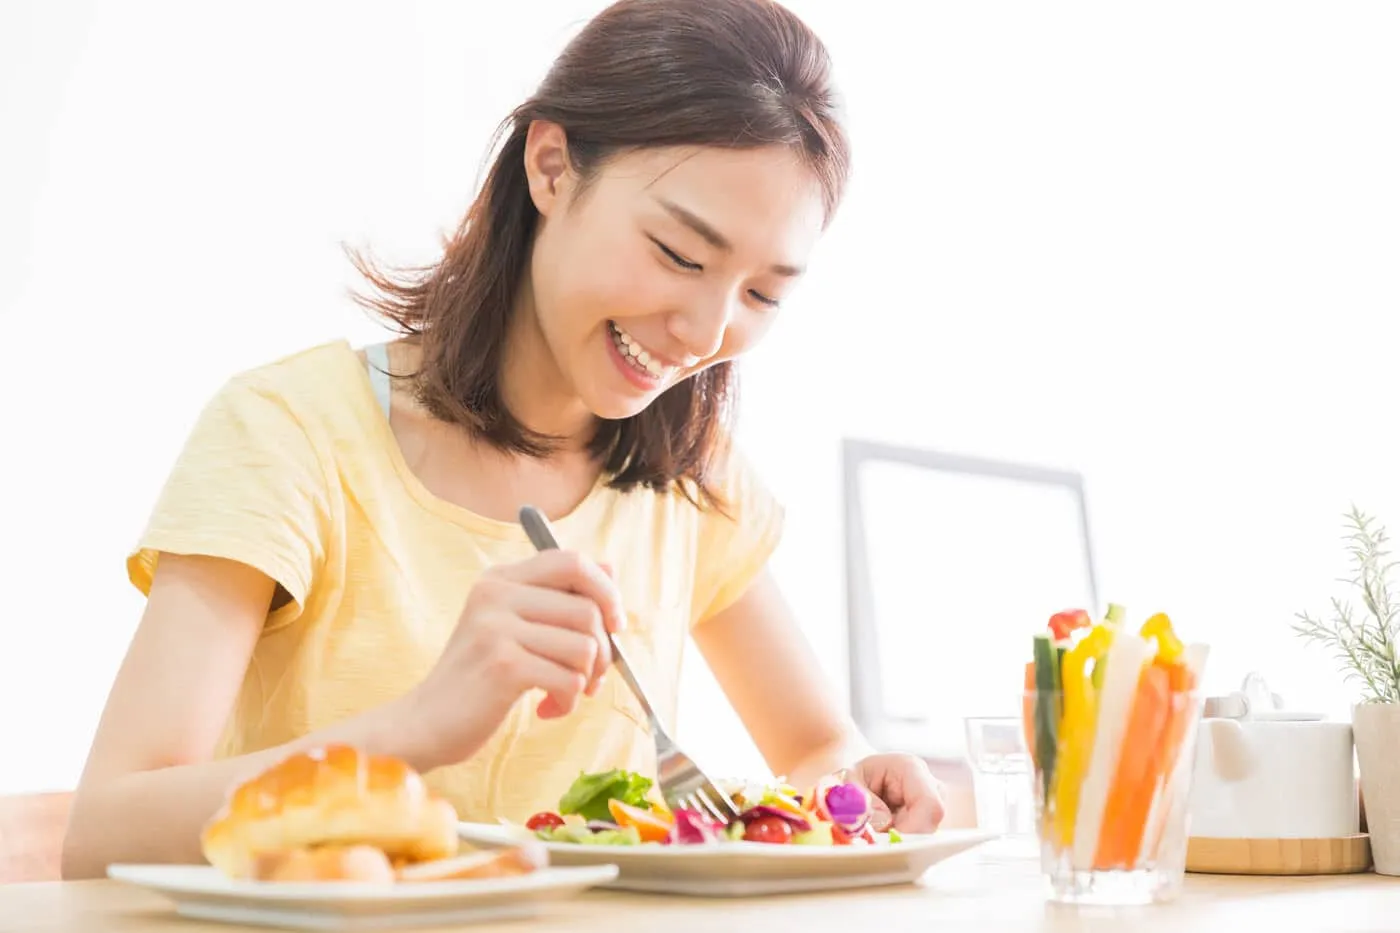 cách chữa trào ngược dạ dày khi chia nhỏ phần ăn và ăn uống trong tâm thế vui tươi